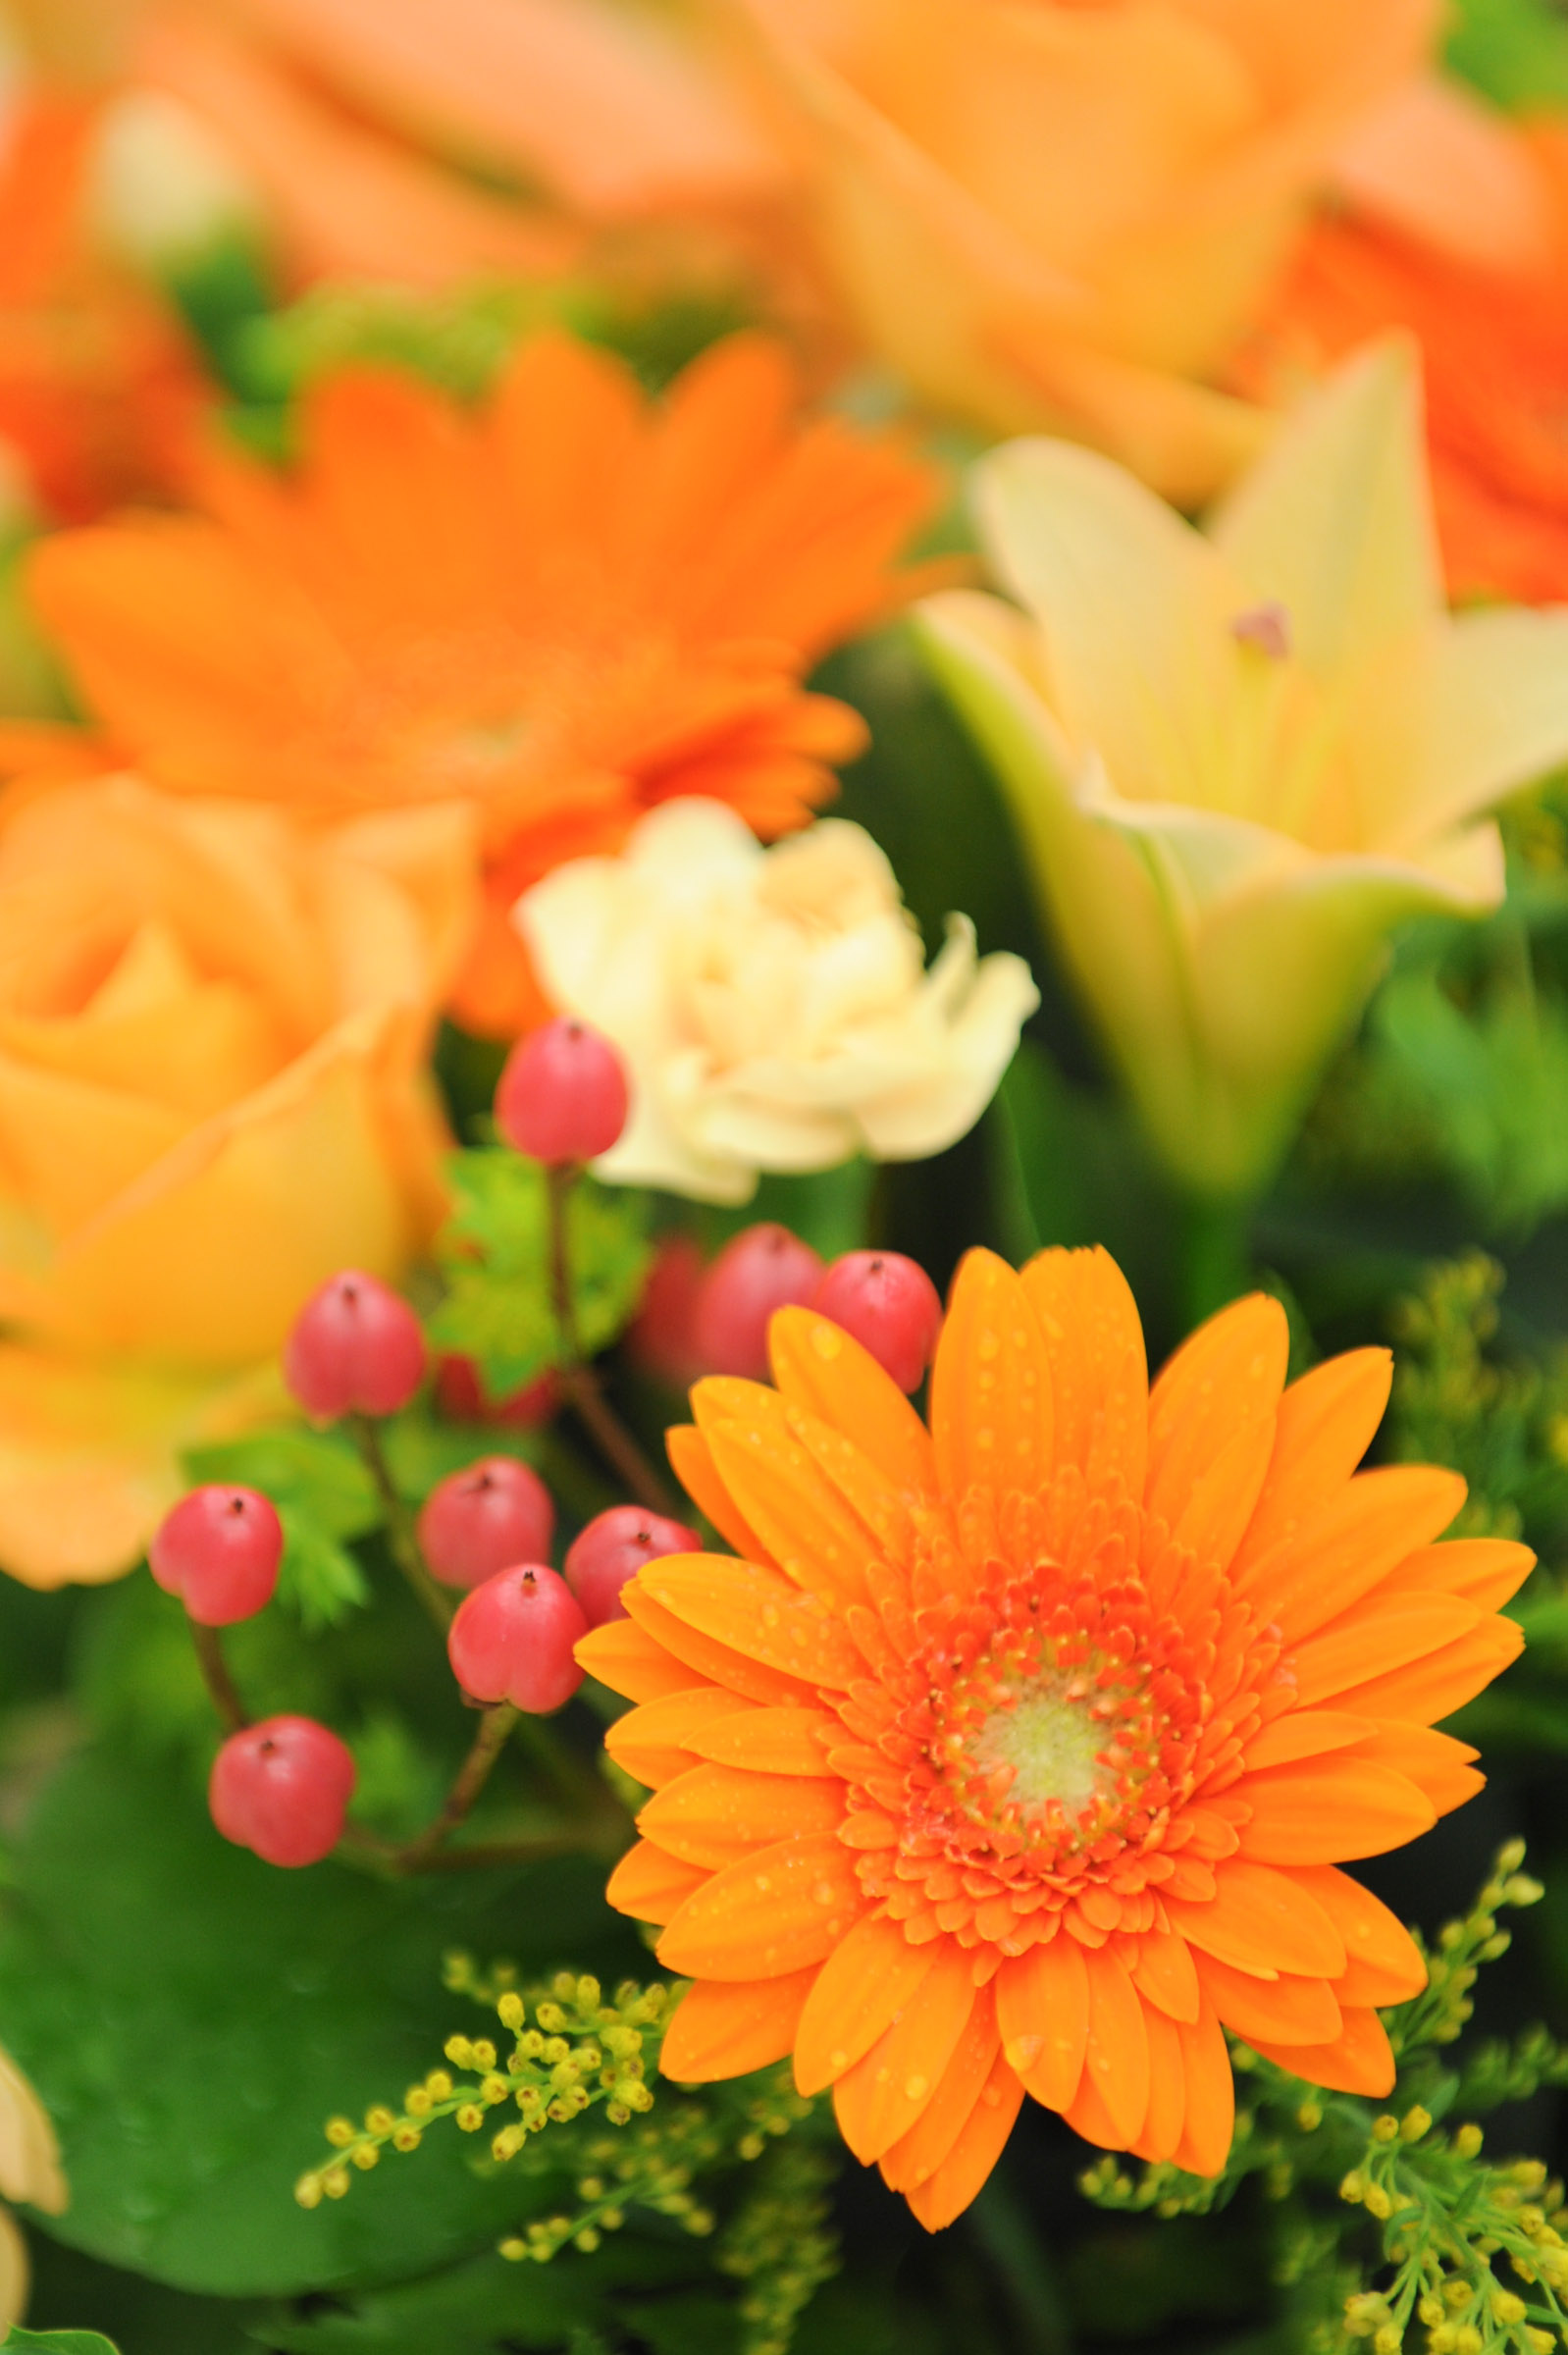 水滴が付いた綺麗なオレンジ色の花と他の花々 Hana 花畑photo